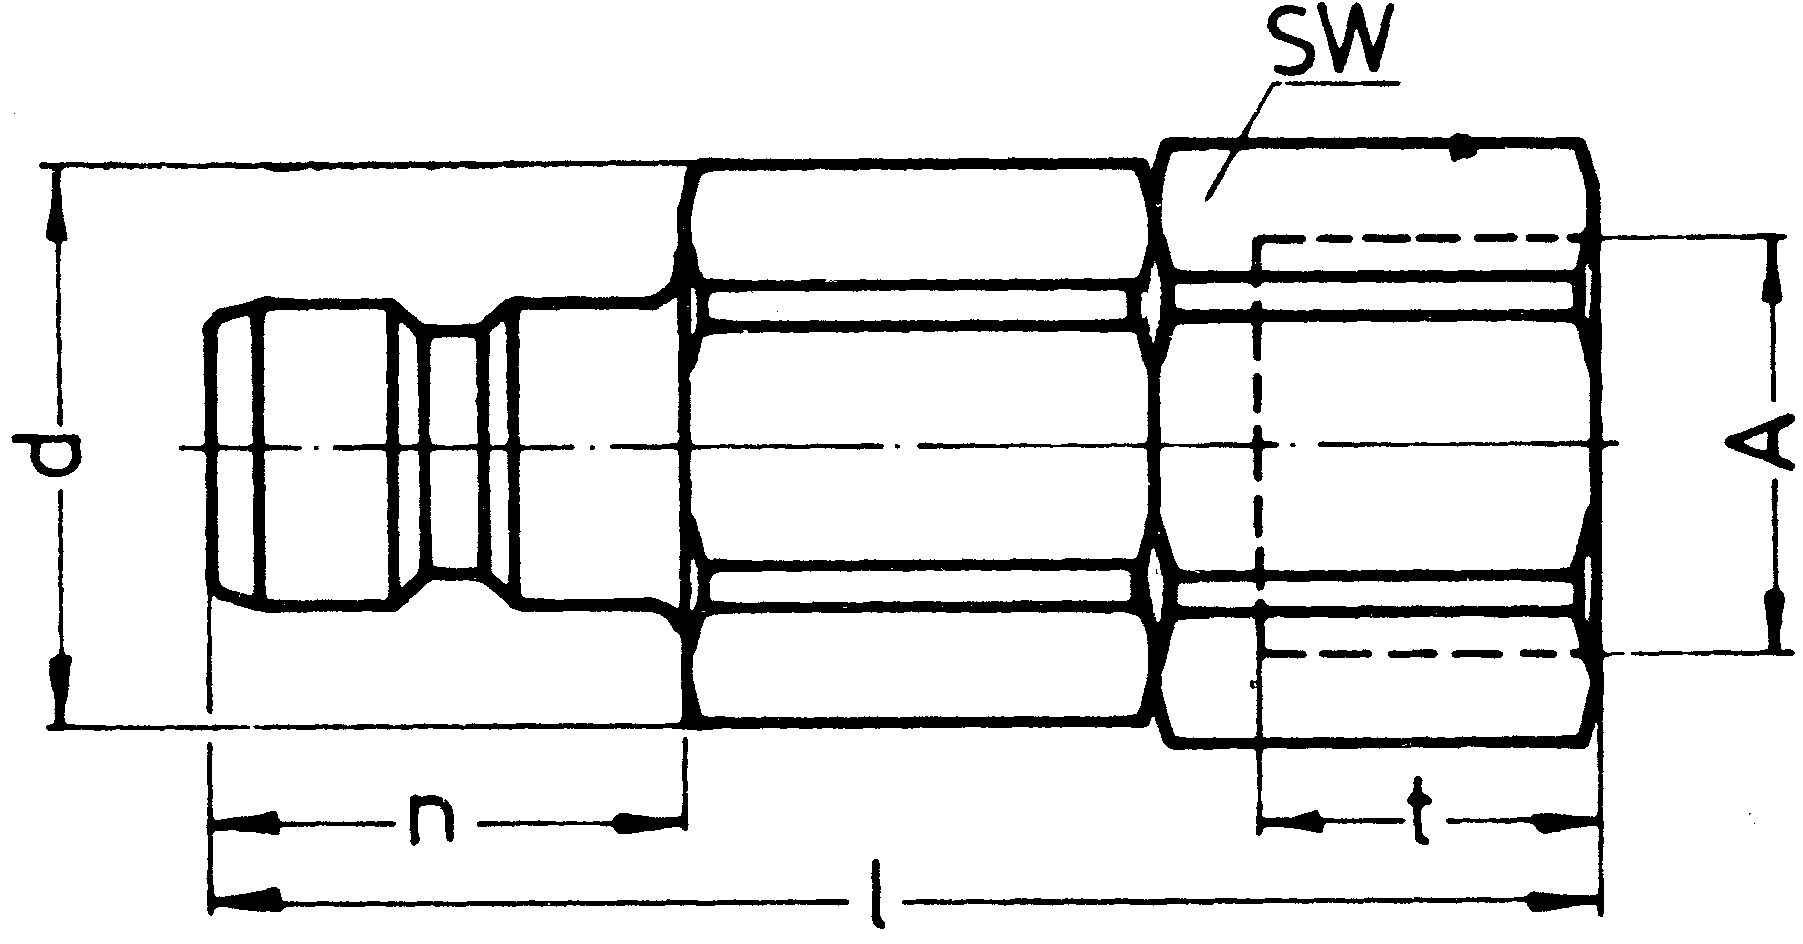 SP-009-2-WR521-11-2-Z02-GW-EB